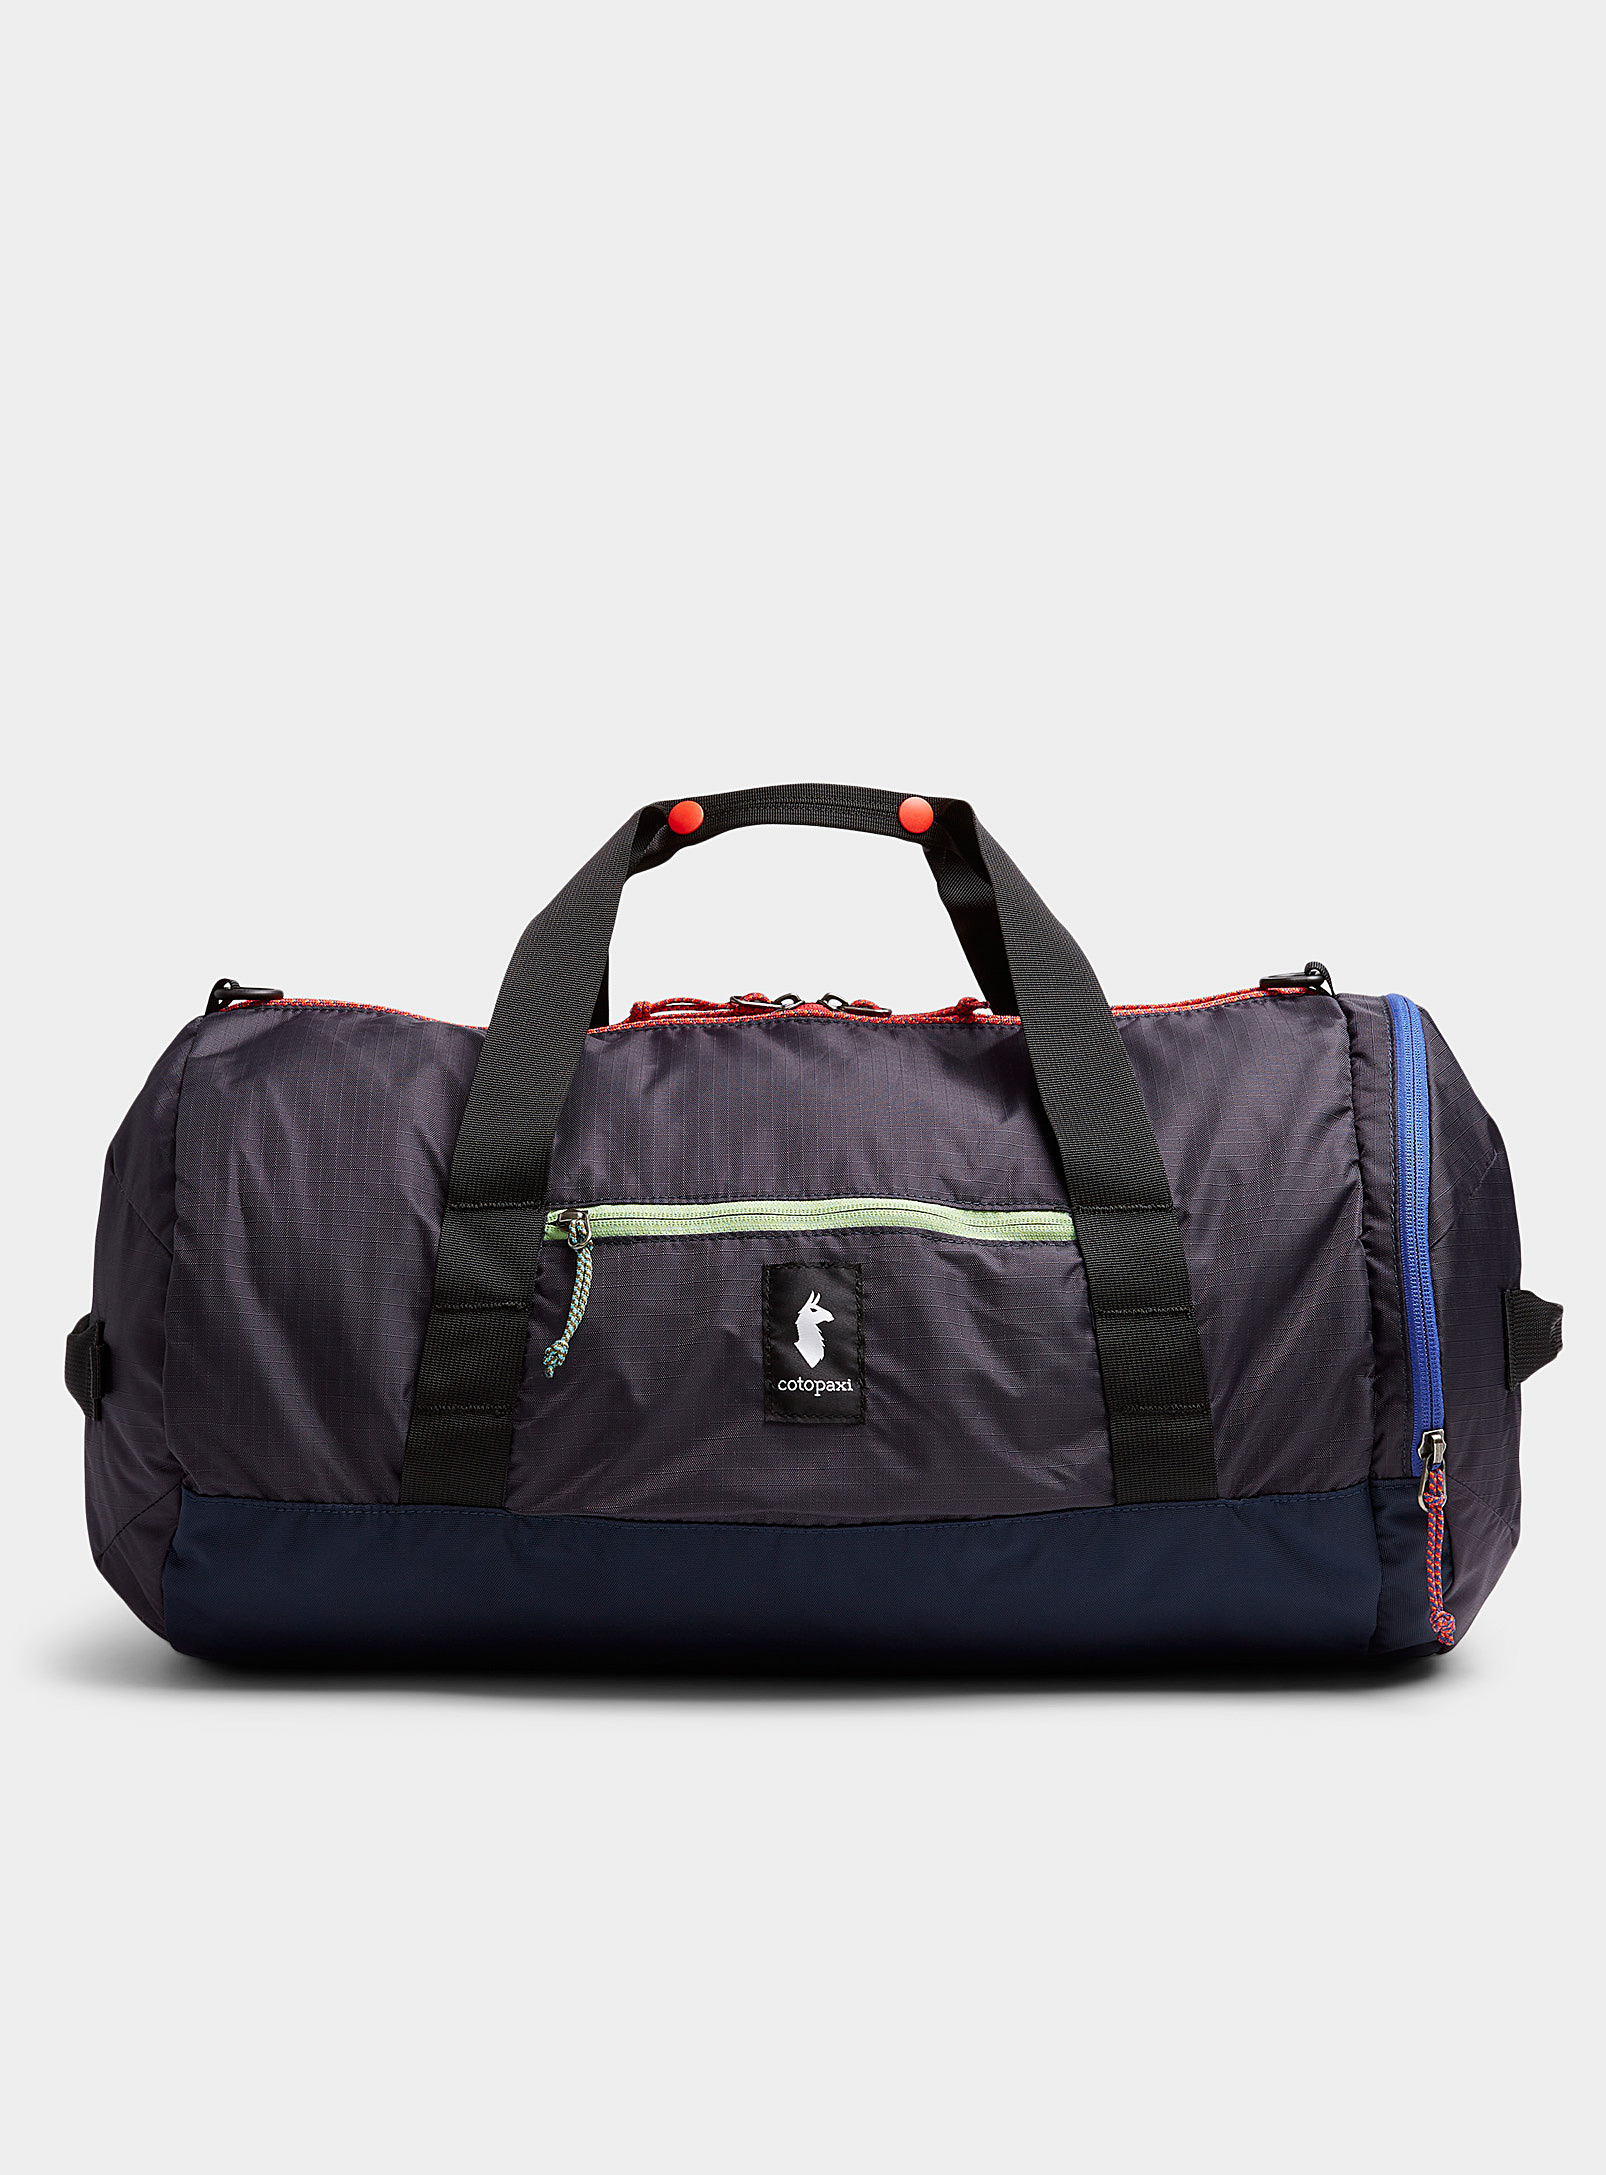 Cotopaxi - Women's Ligera 32L duffel bag